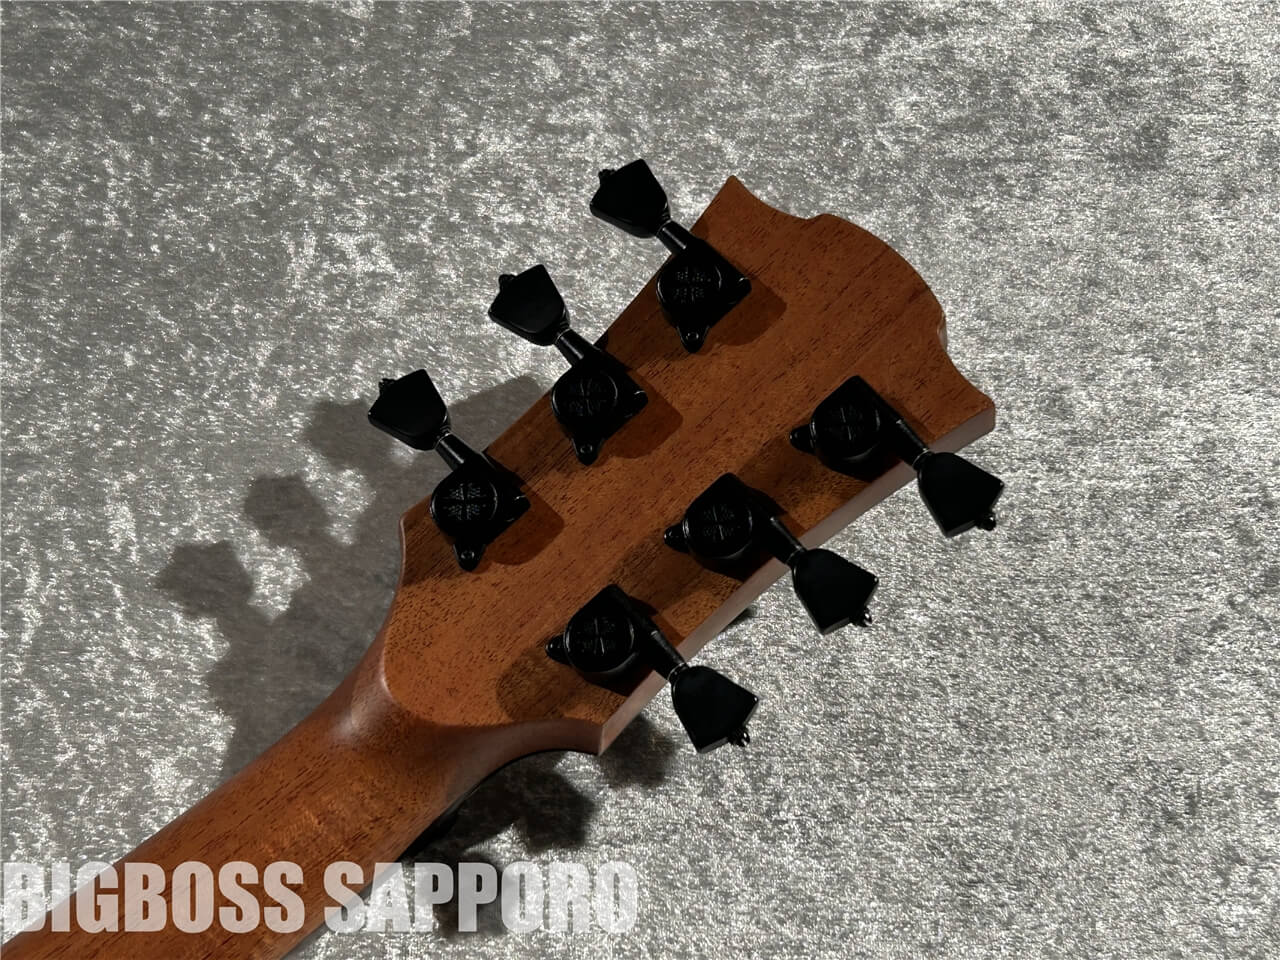 【即納可能/BigBonusFesta!!】LAG Guitars(ラグギターズ) T318D 札幌店